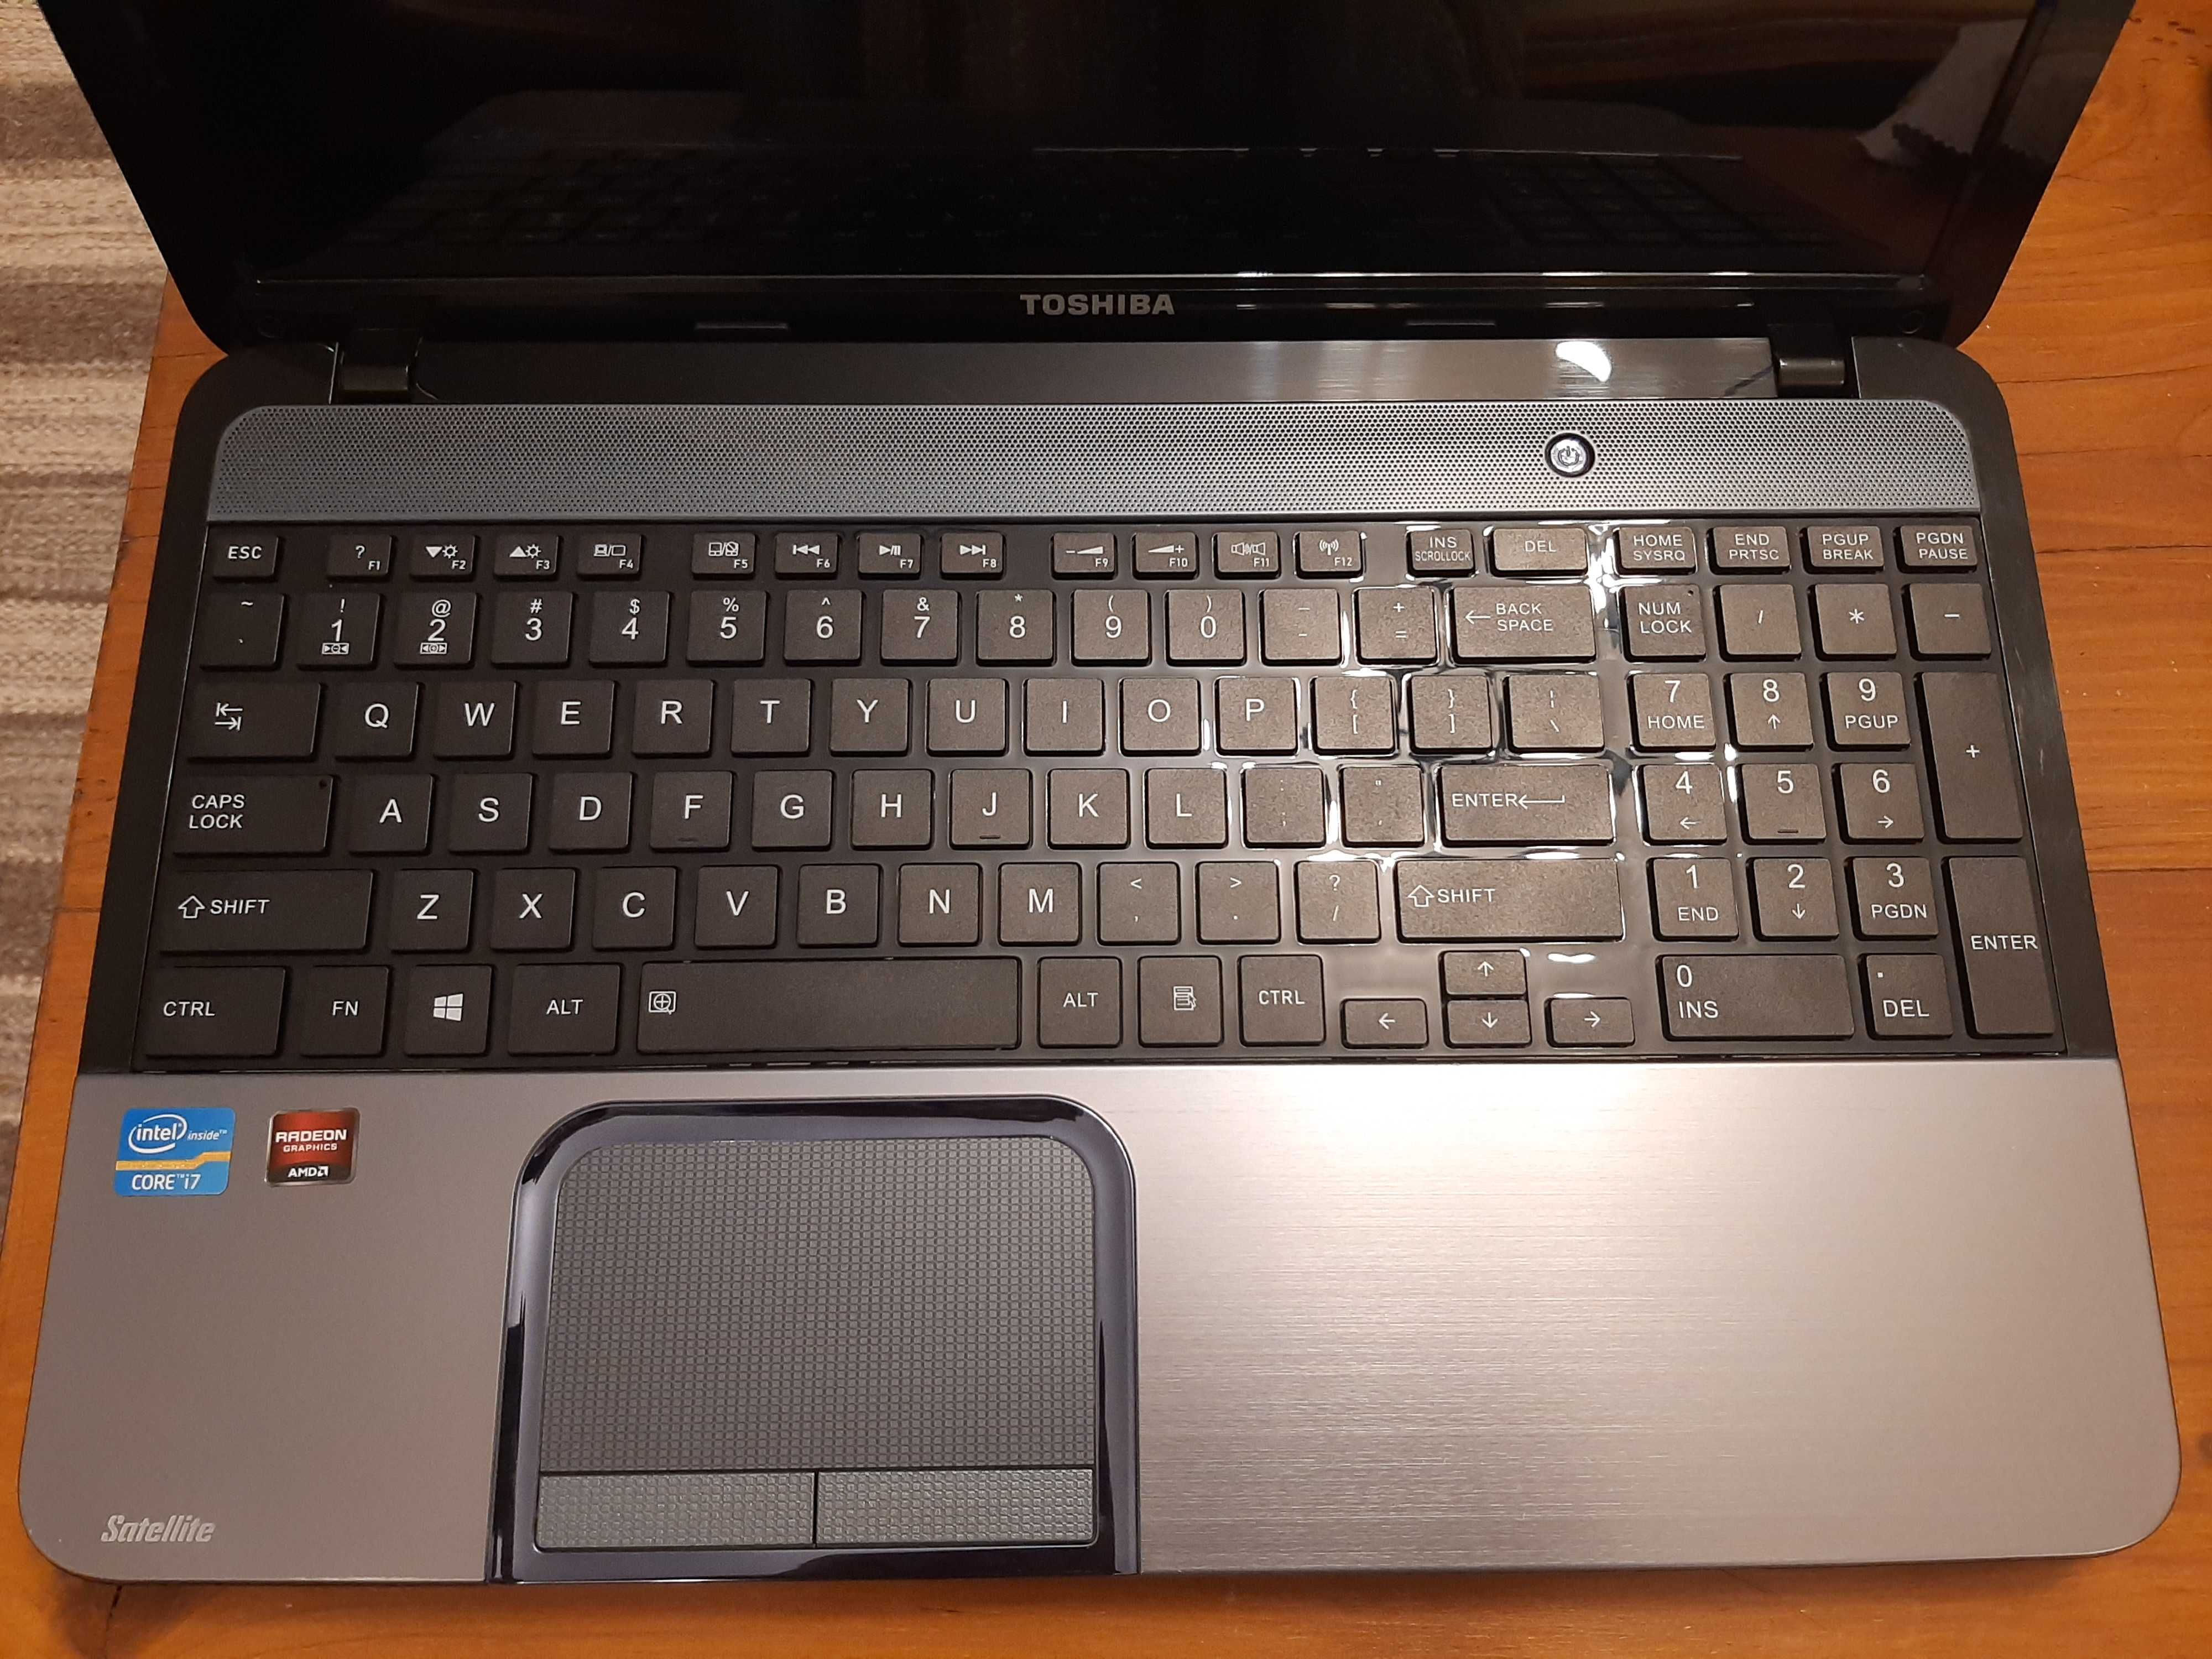 Laptop Toshiba L855-159 Intel i7 2.4 GHz, 6GB Ram, HDD 750GB, AMD  2GB